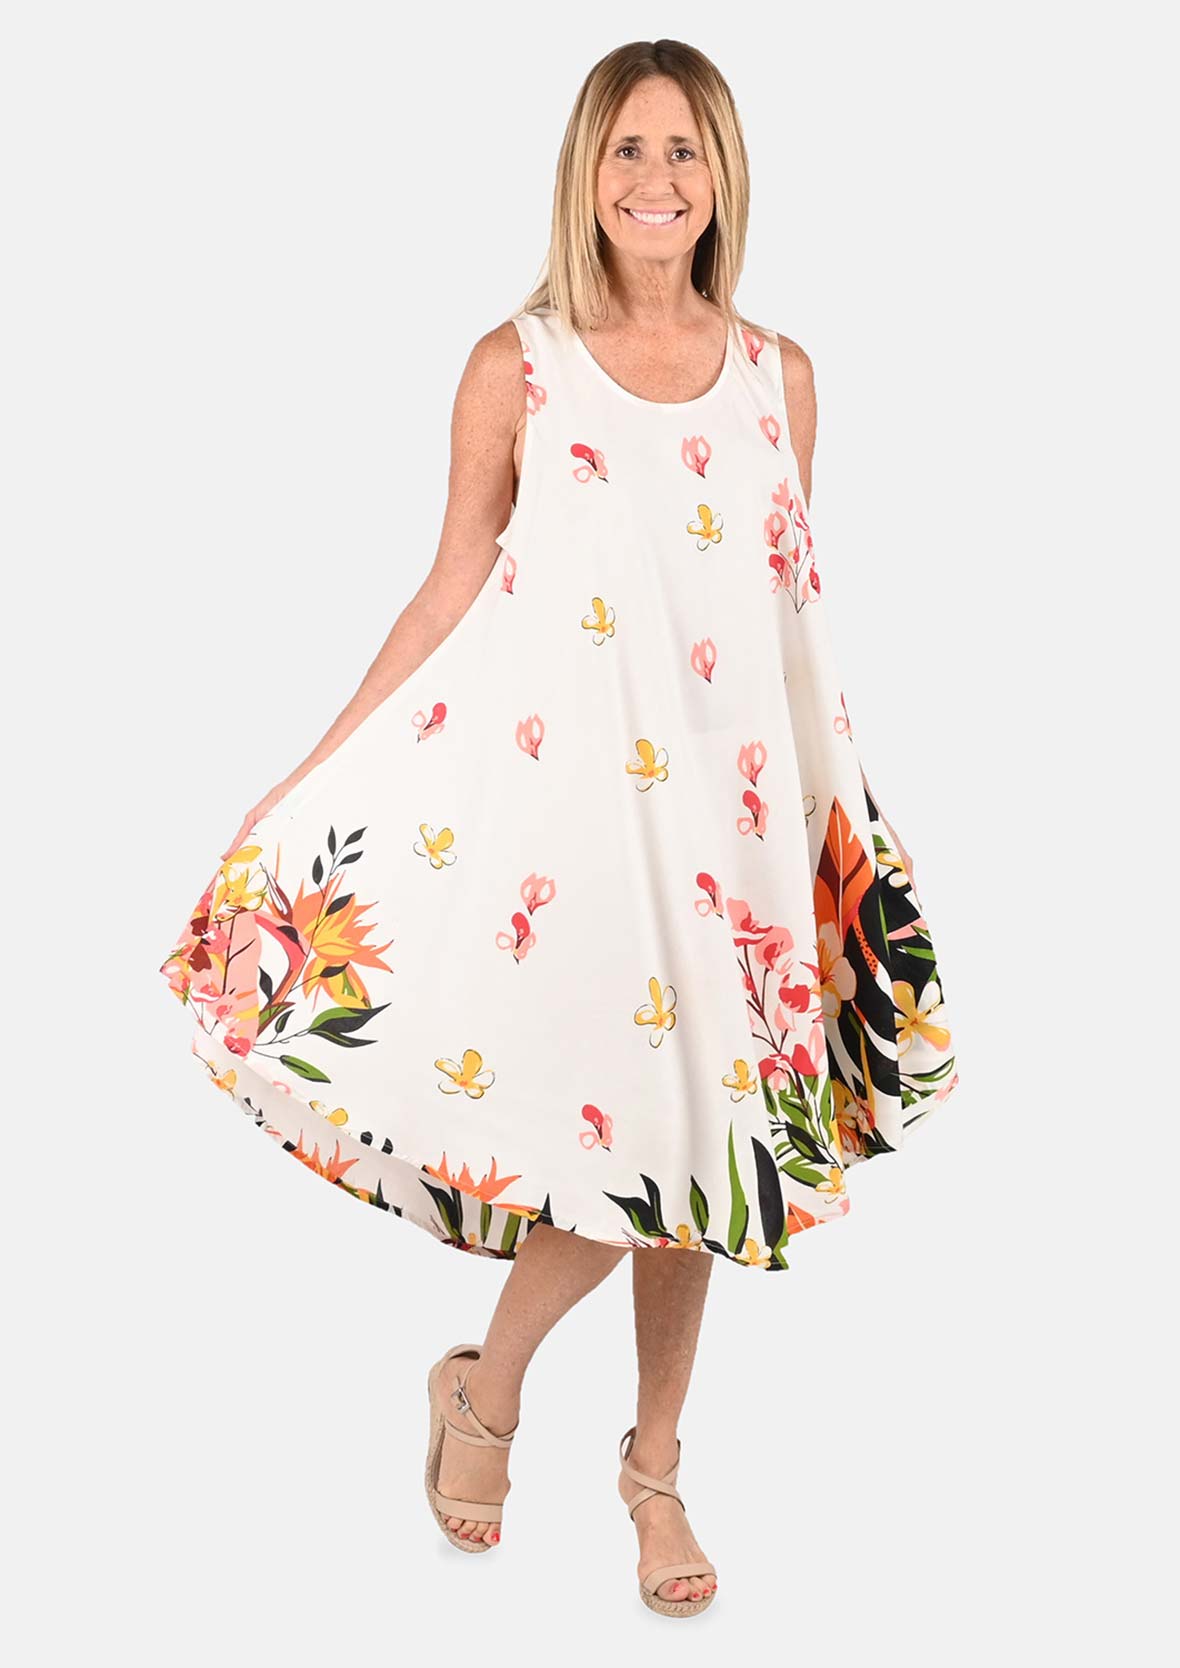 floral screen print sleeveless white umbrella dress #color_White Floral Screen Print